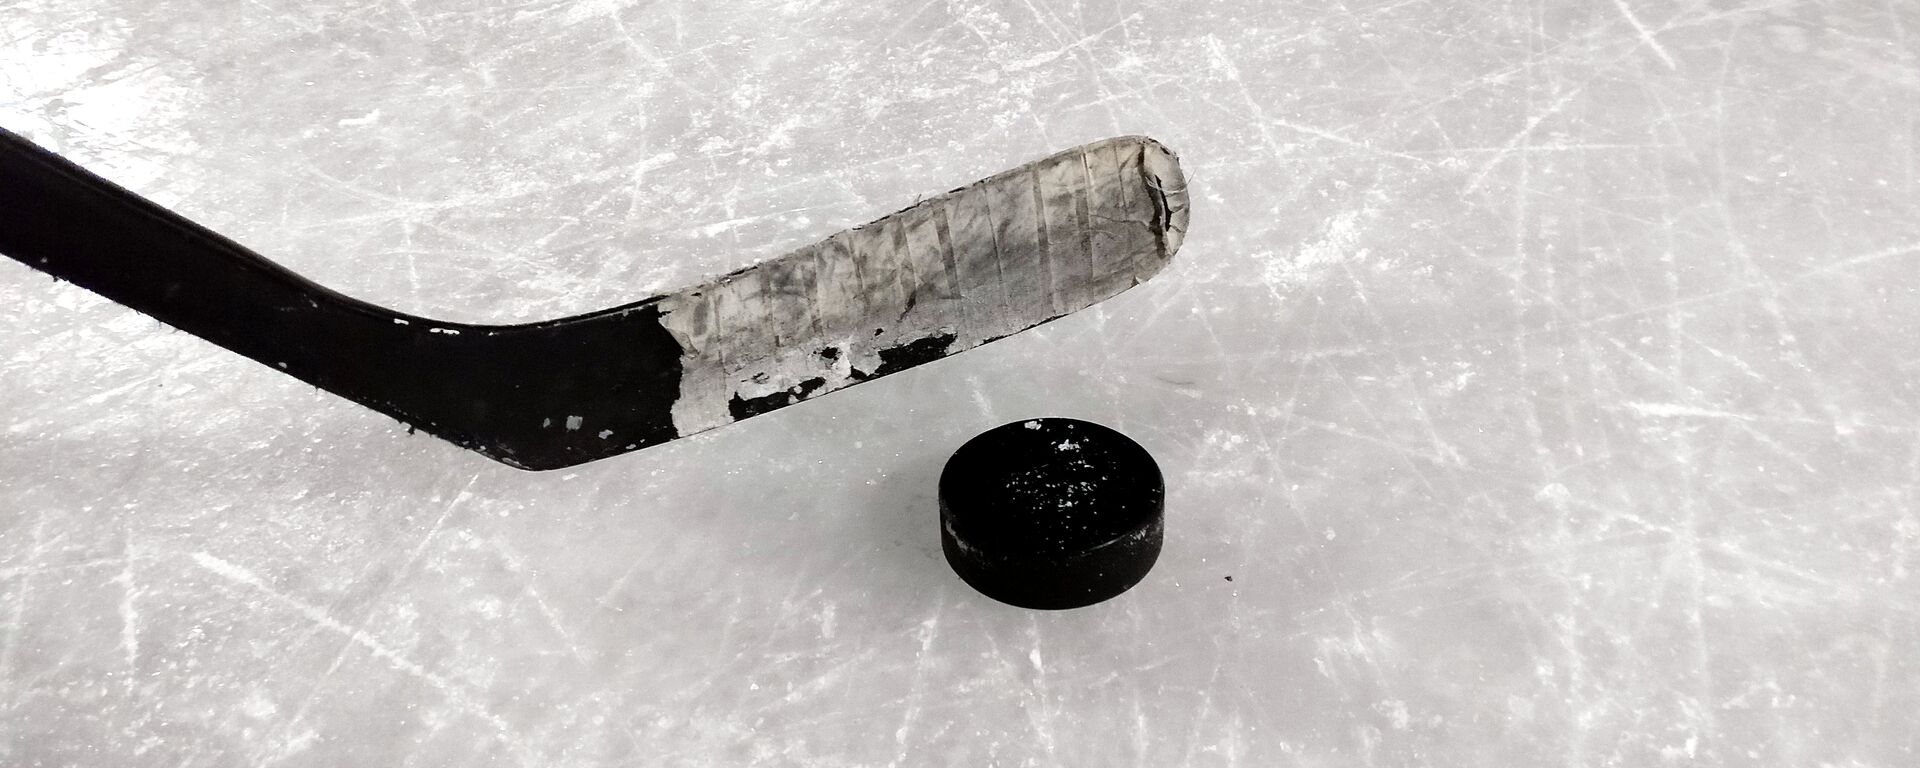 Un 'poc' y un palo de hockey sobre hielo - Sputnik Mundo, 1920, 18.01.2021